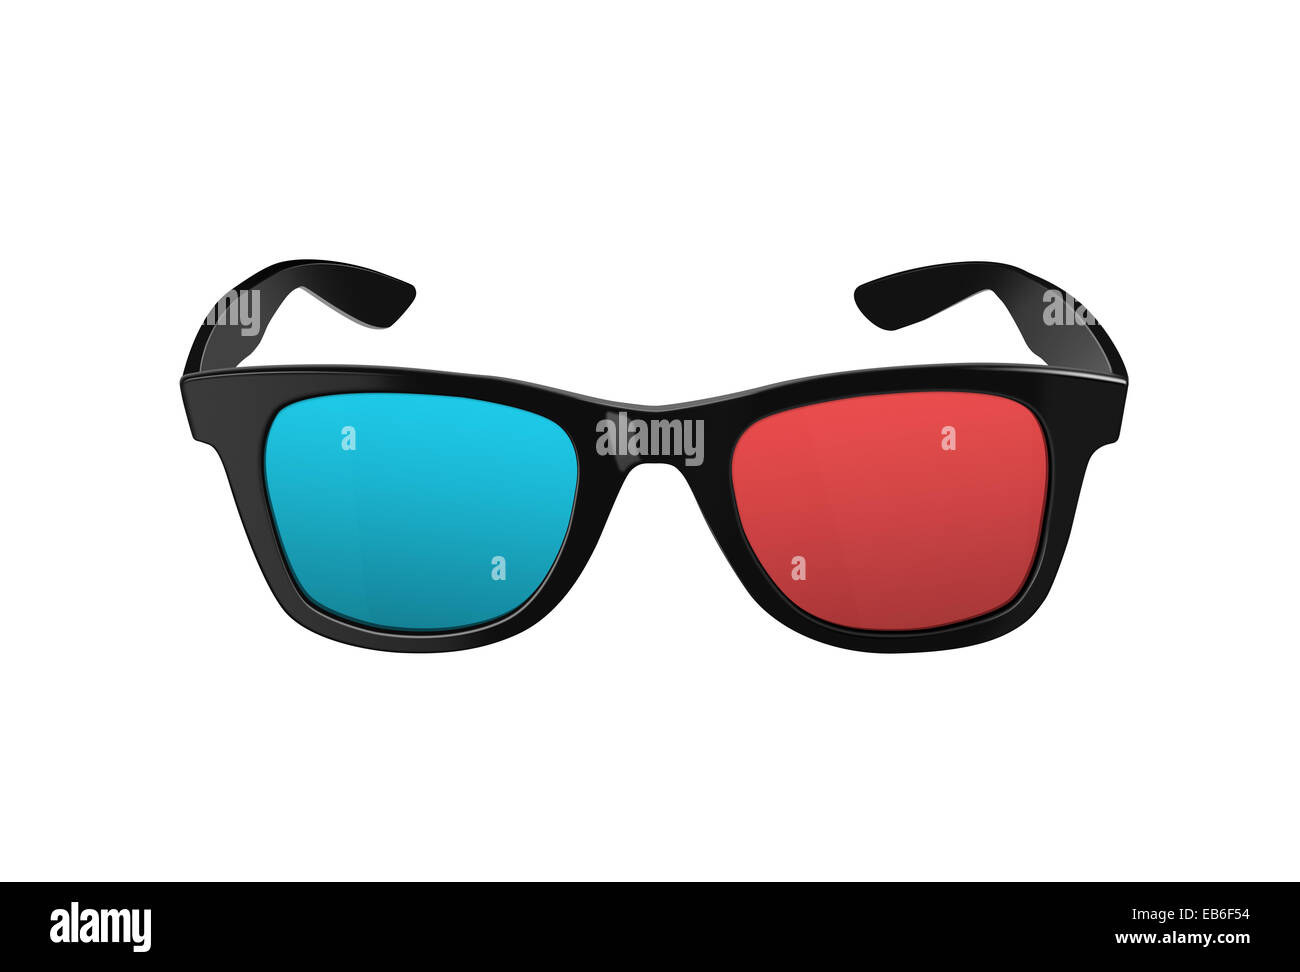 Des lunettes 3D, pour les films ou les films en trois dimensions, avec des jantes en plastique rouge et bleu et des lentilles, à la fois moderne et rétro Banque D'Images